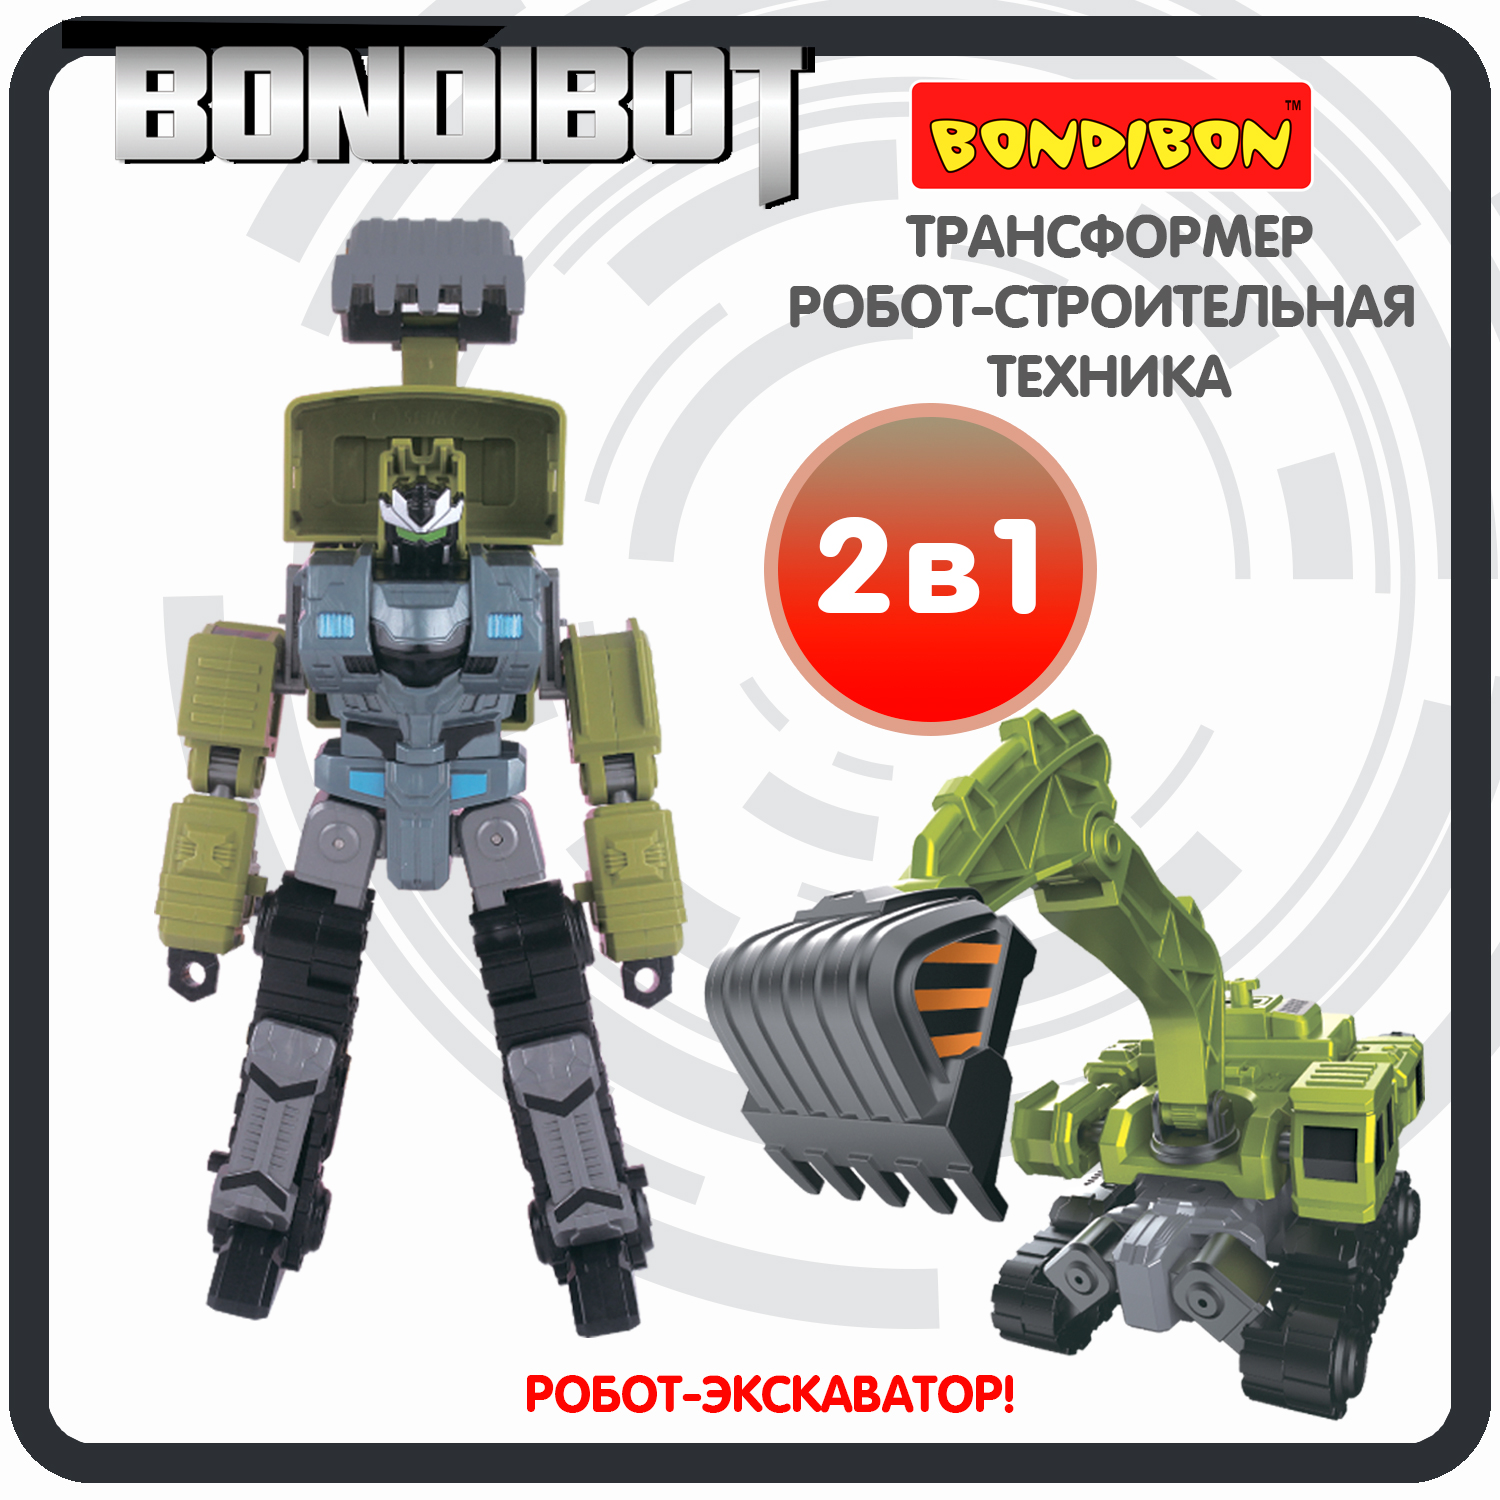 Трансформер робот-строительная техника, 2в1 BONDIBOT Bondibon, экскаватор / ВВ6054 bondibon трансформер bondibot 2 в 1 робот трактор с ковшом